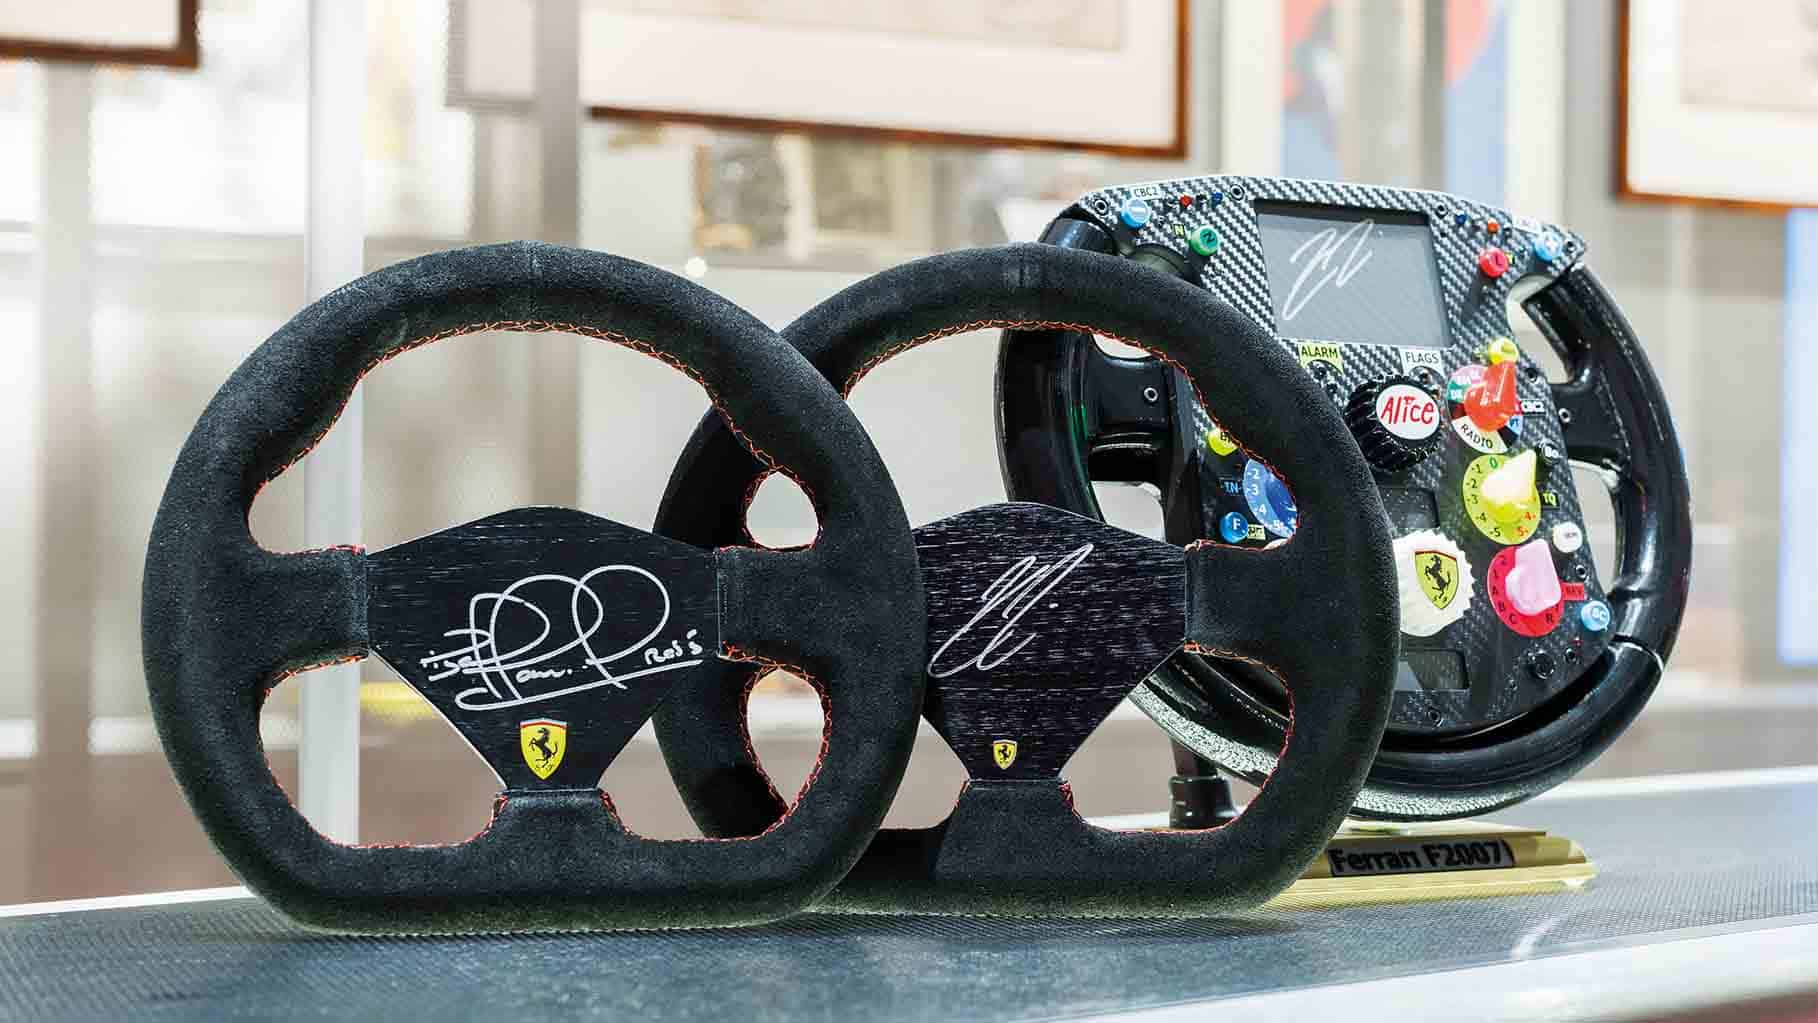 Signed racing steering wheels